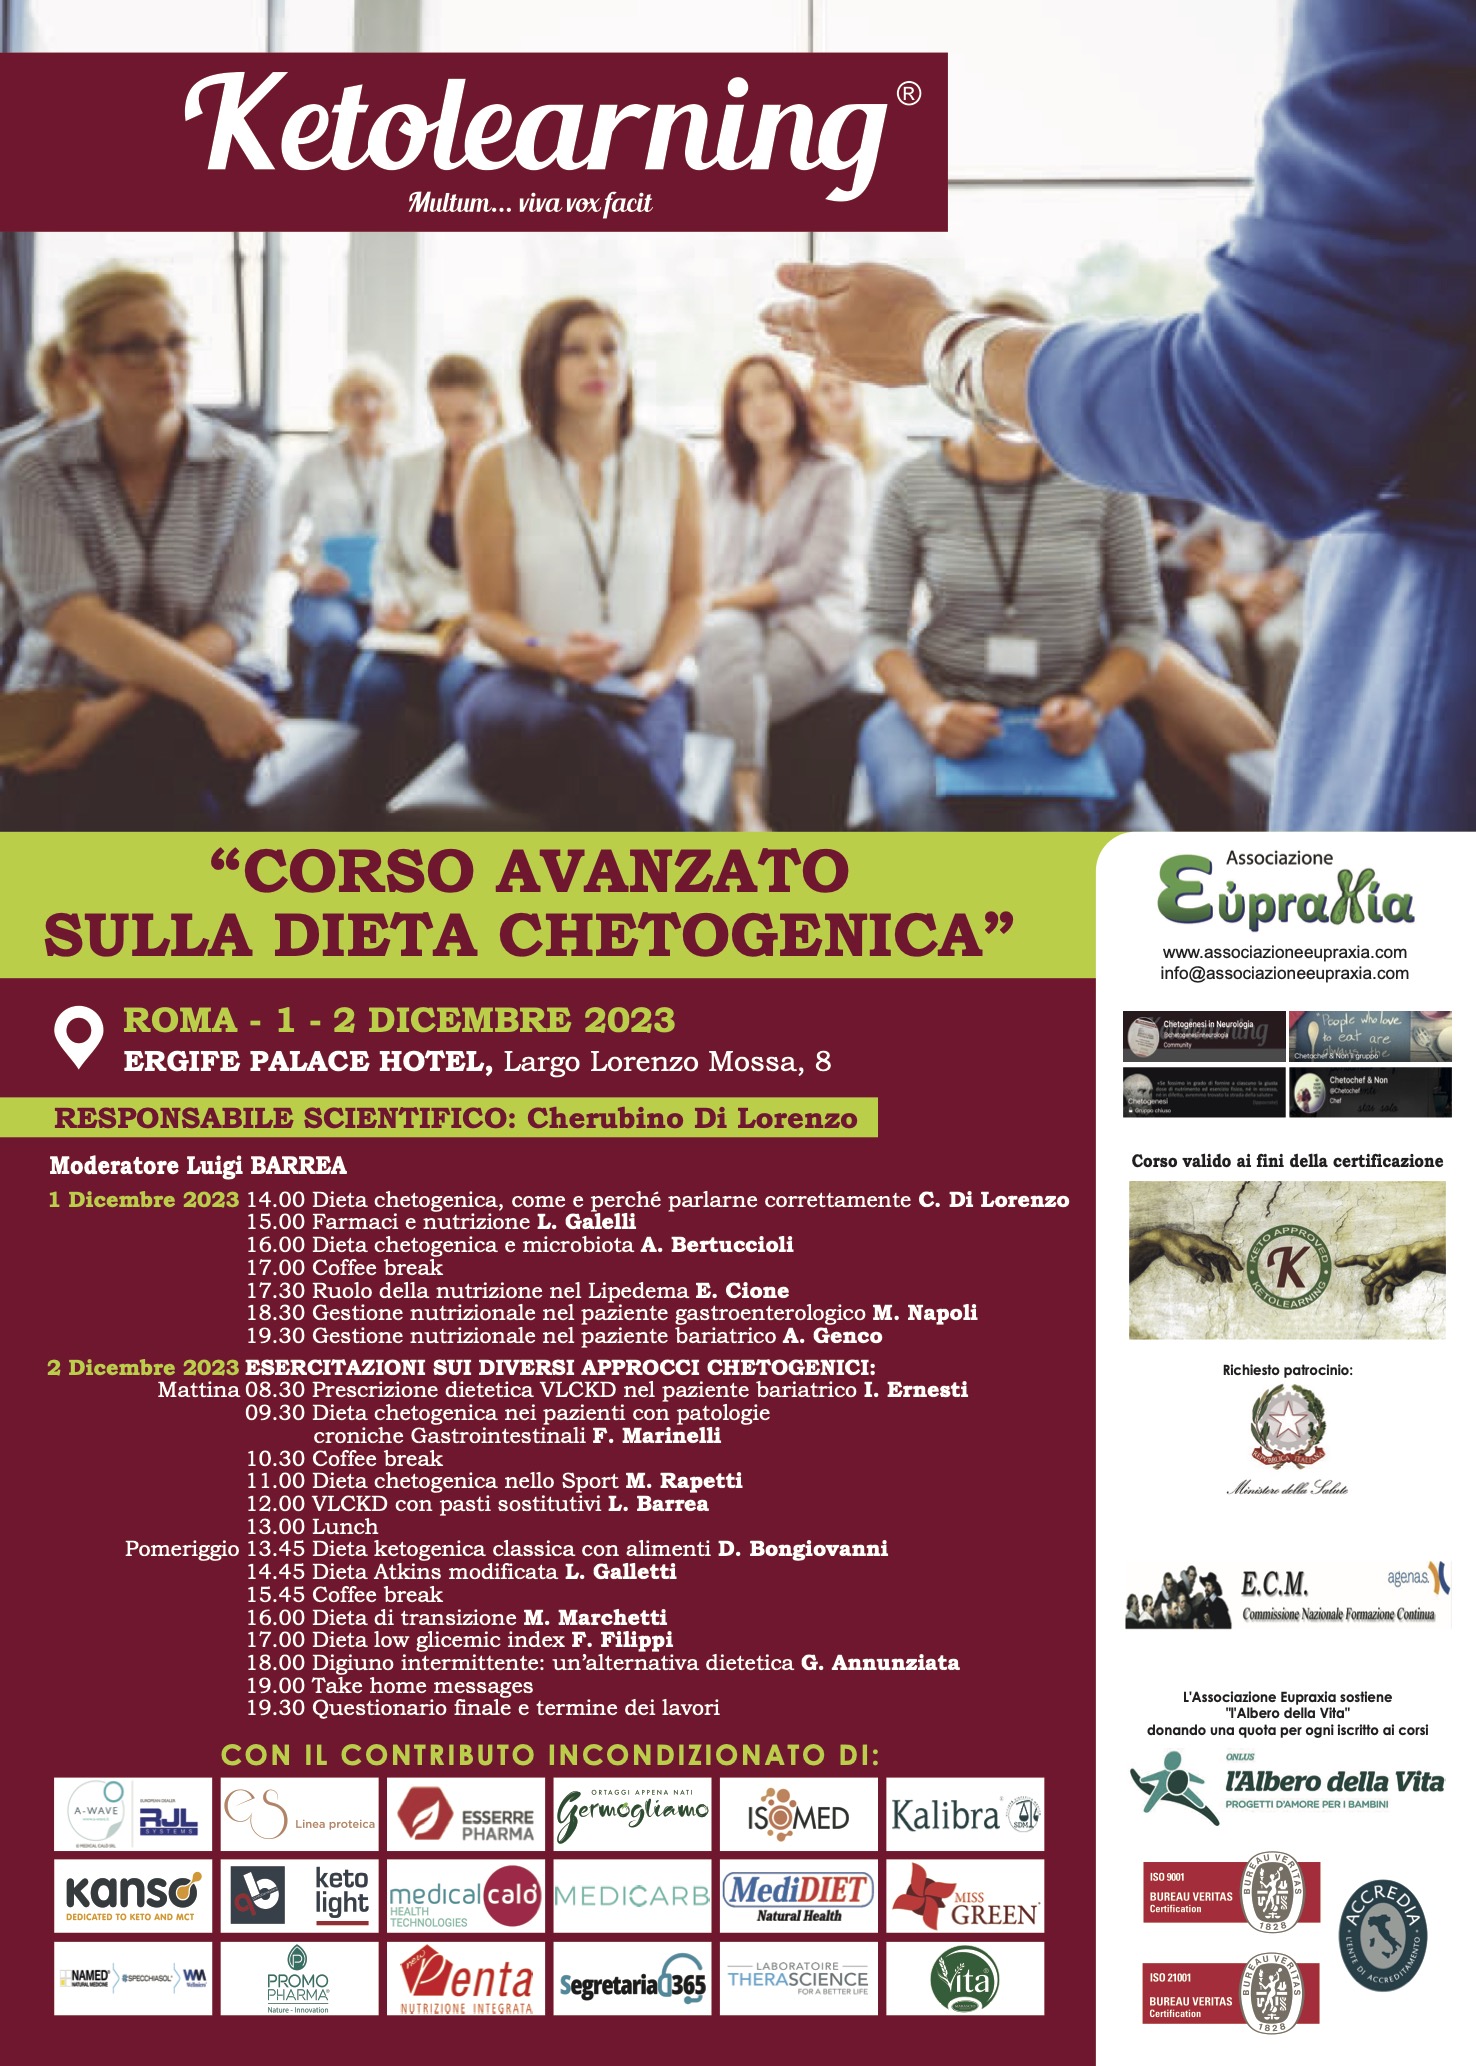 Featured image for “Corso avanzato sulla dieta chetogenica ROMA 01-02/12”